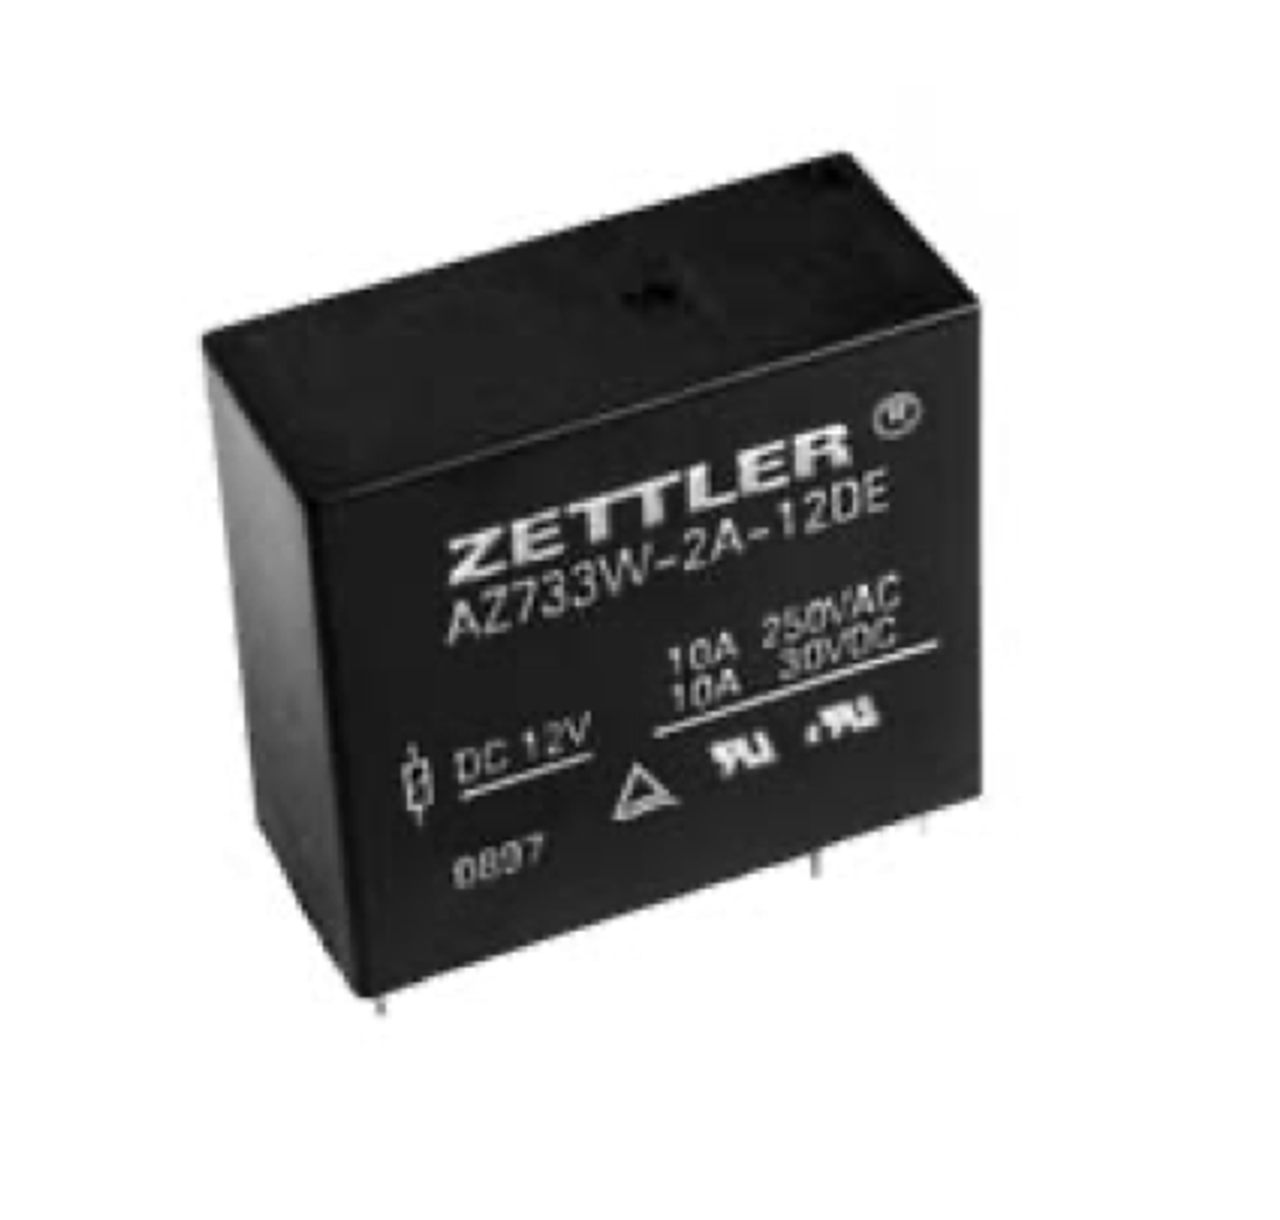 American Zettler AZ733W-2A-30D Power Relay